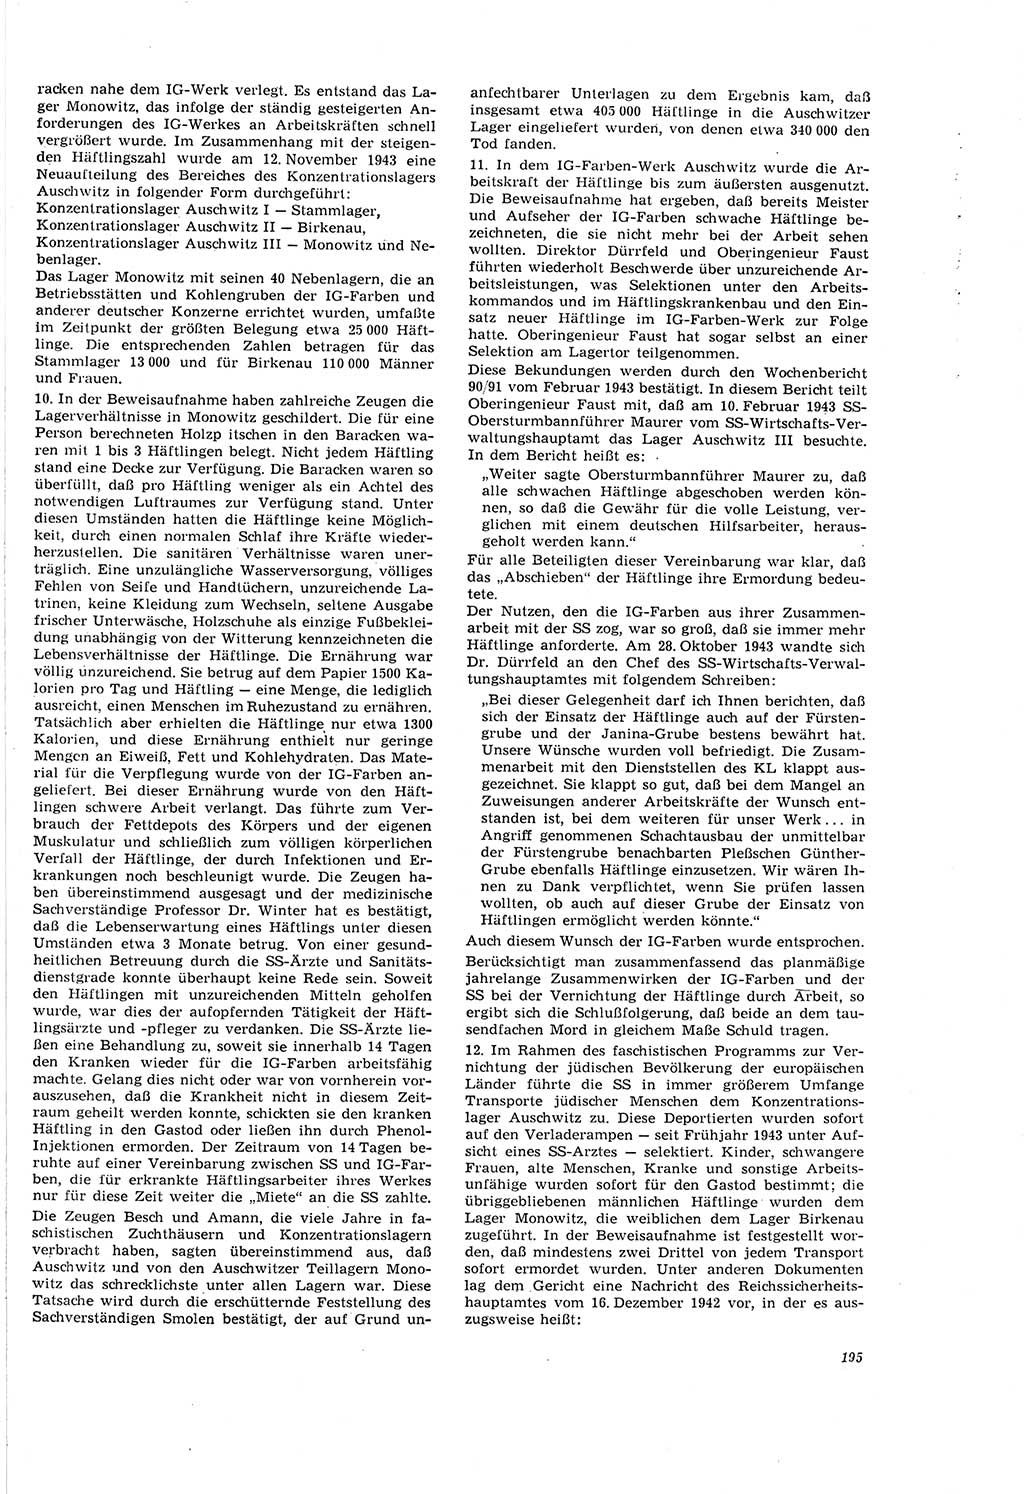 Neue Justiz (NJ), Zeitschrift für Recht und Rechtswissenschaft [Deutsche Demokratische Republik (DDR)], 20. Jahrgang 1966, Seite 195 (NJ DDR 1966, S. 195)